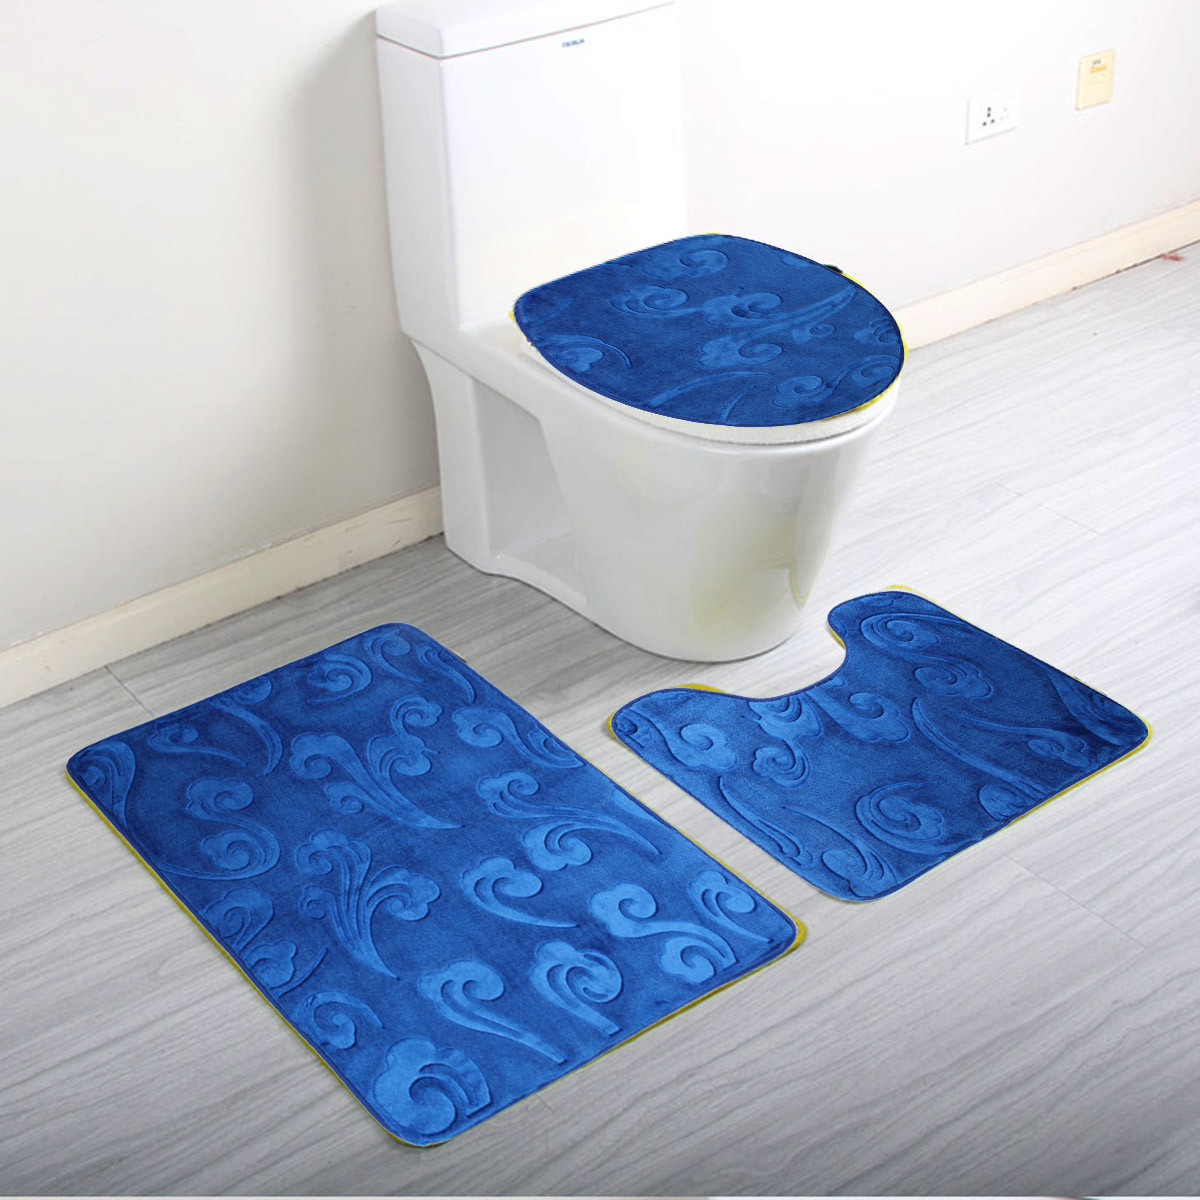 3 Pieces Non-slip Soft Bath Pedestal Mat Toilet Lid Carpet Bathroom Rug Washable 